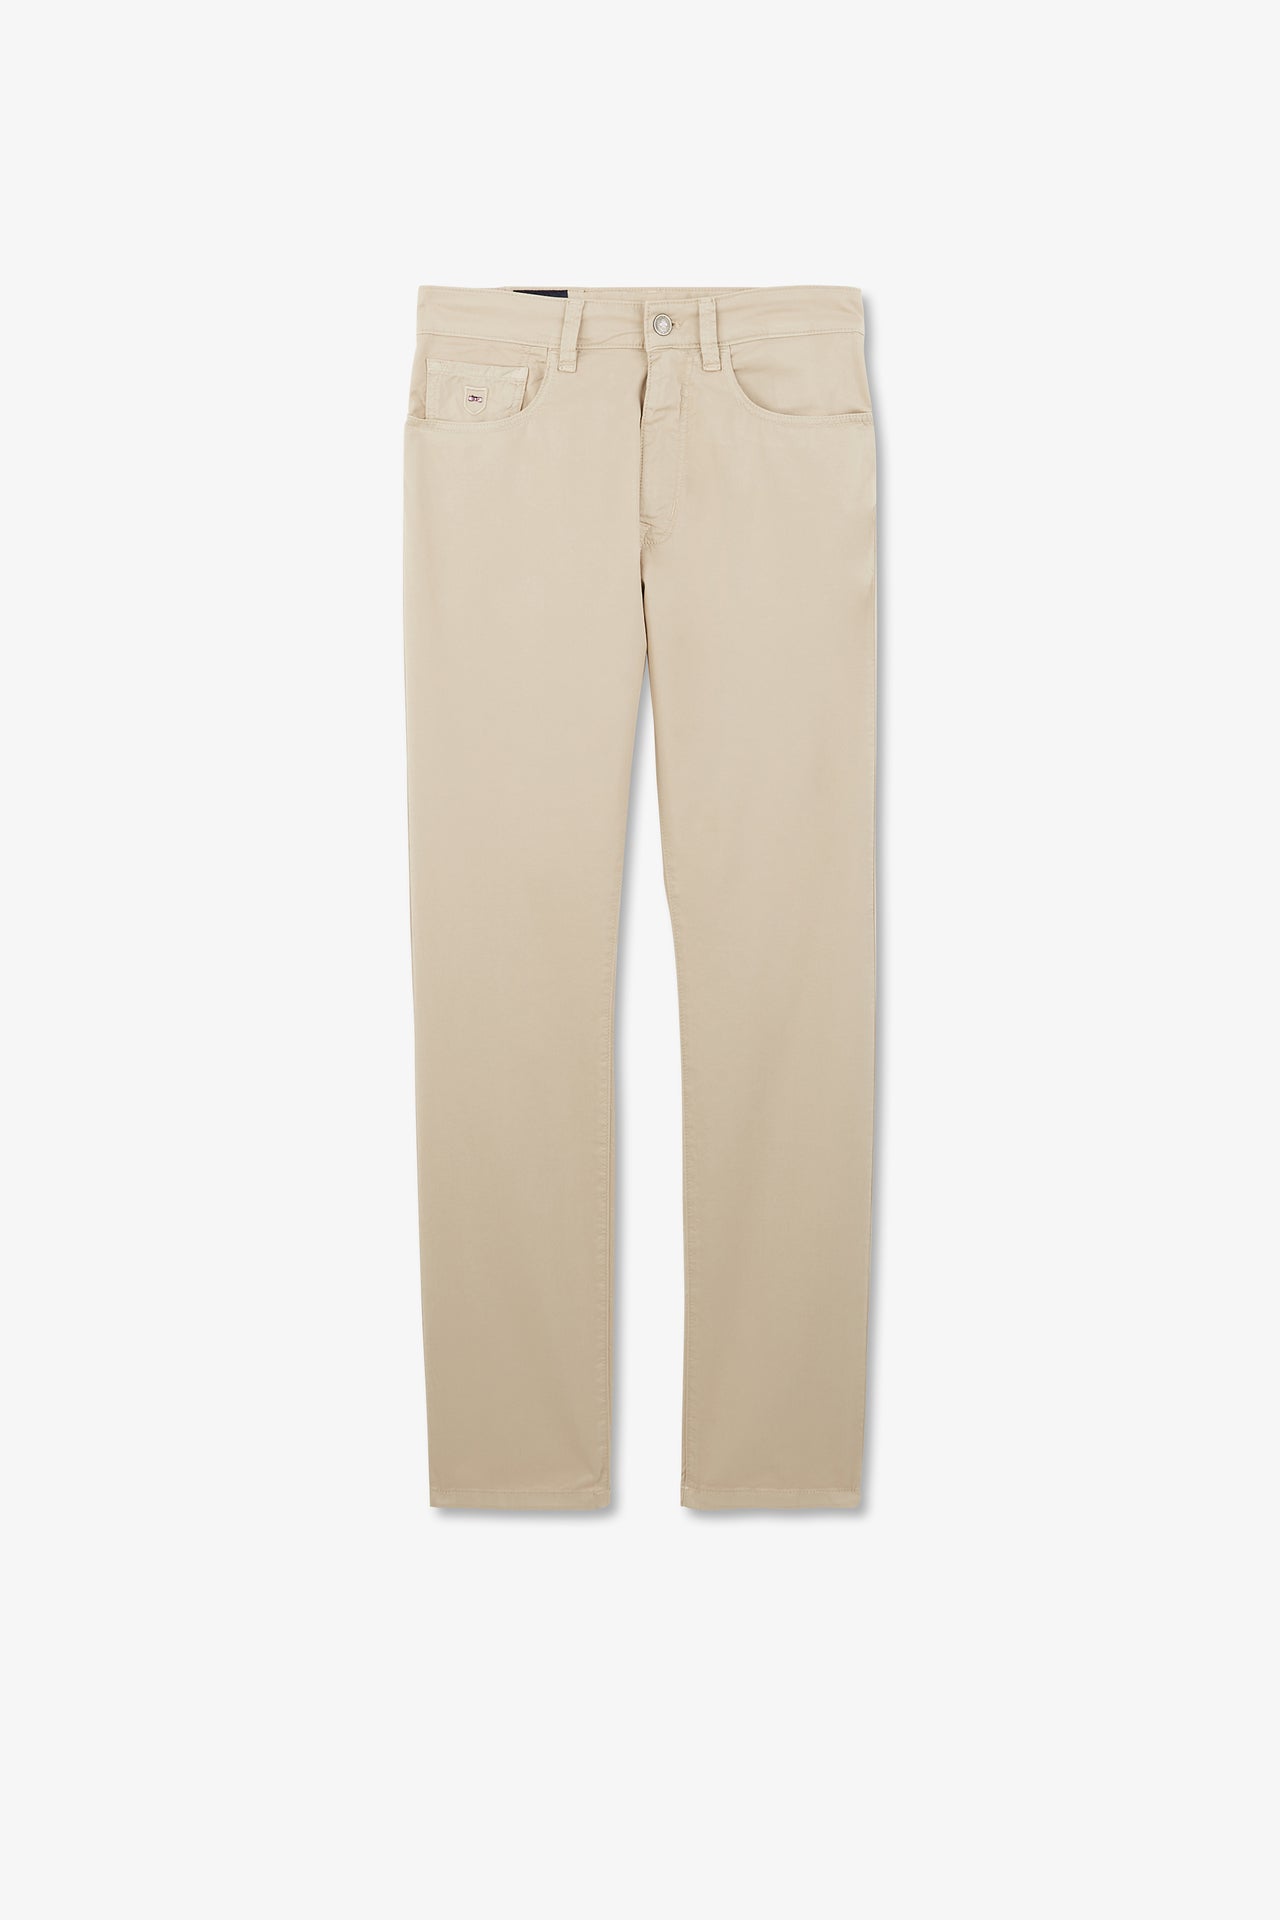 Pantalon beige droit 5 poches